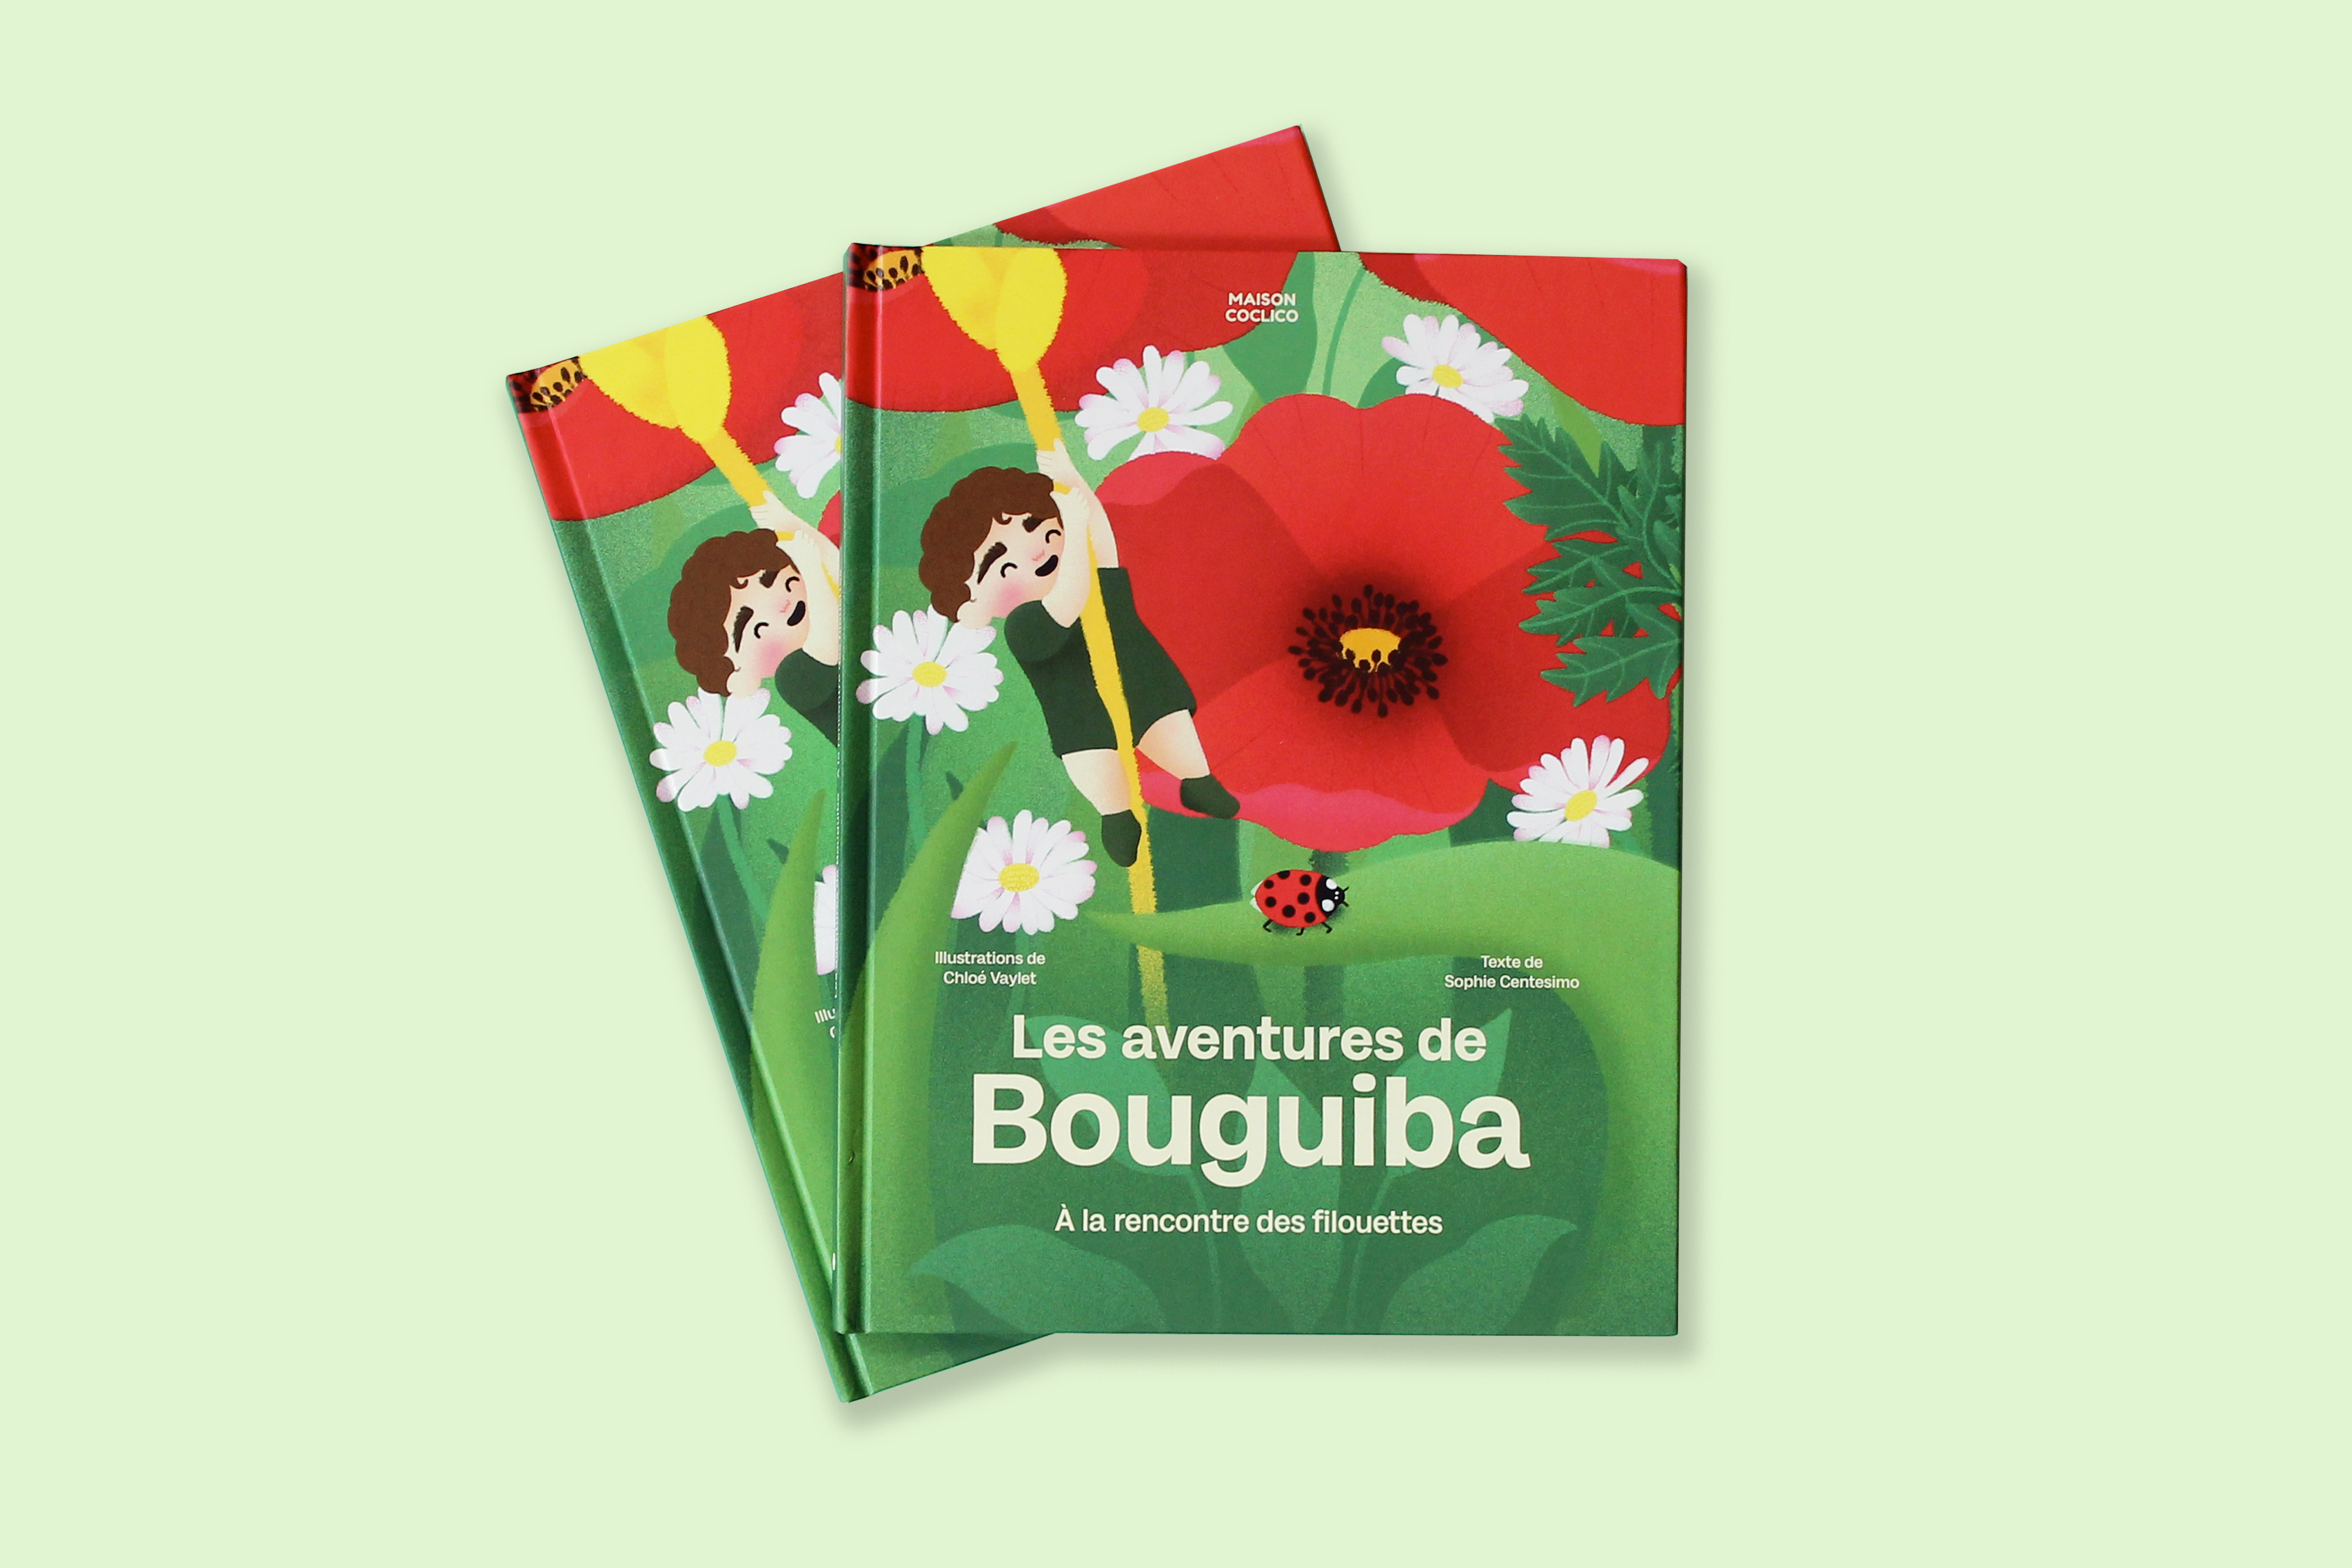 Les aventures de Bouguiba